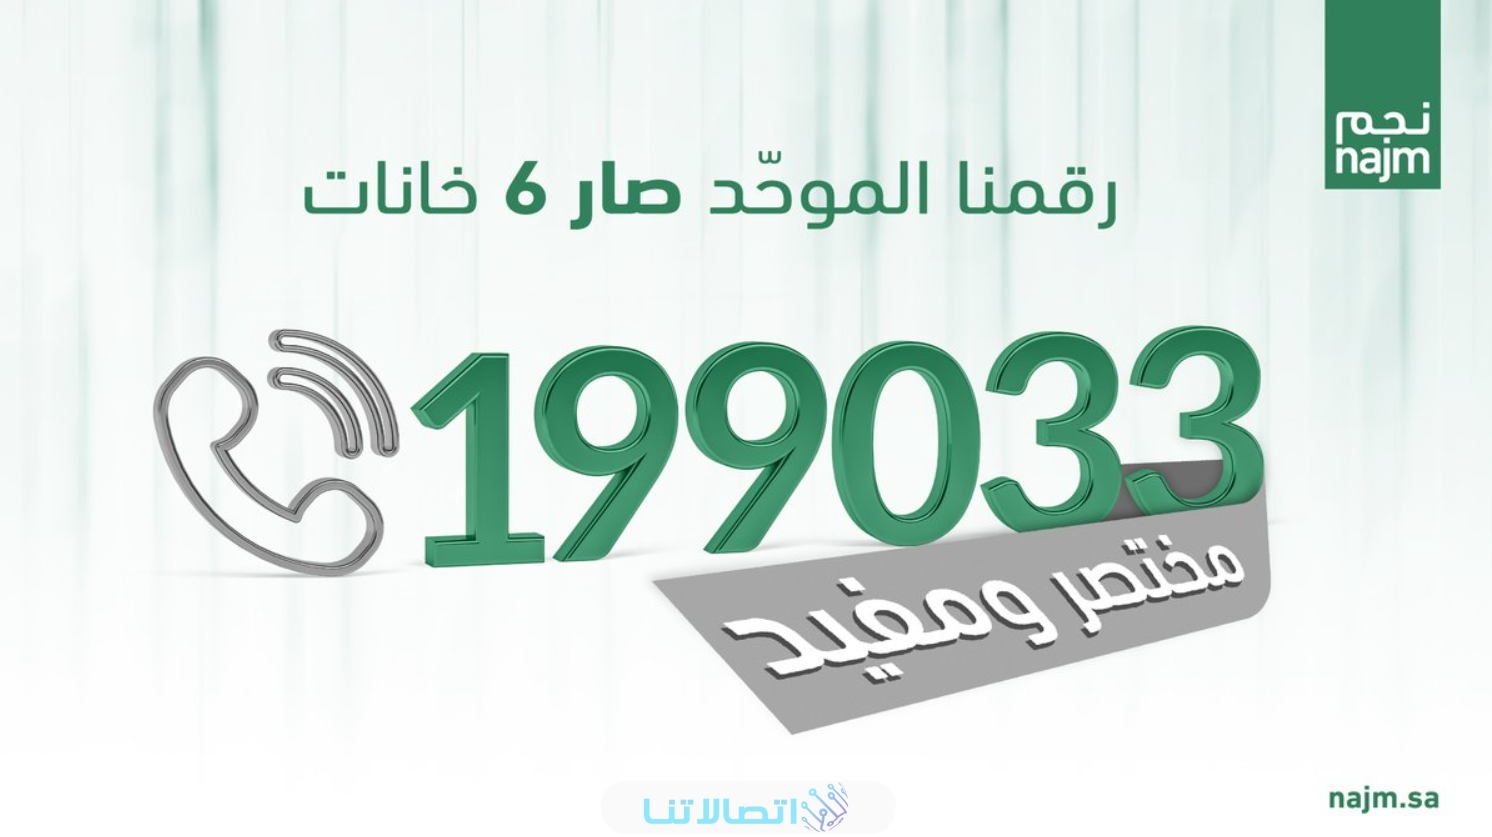 رقم نجم للحوادث الموحد 2023 وكيفية الابلاغ عن الحوادث في السعودية 1445